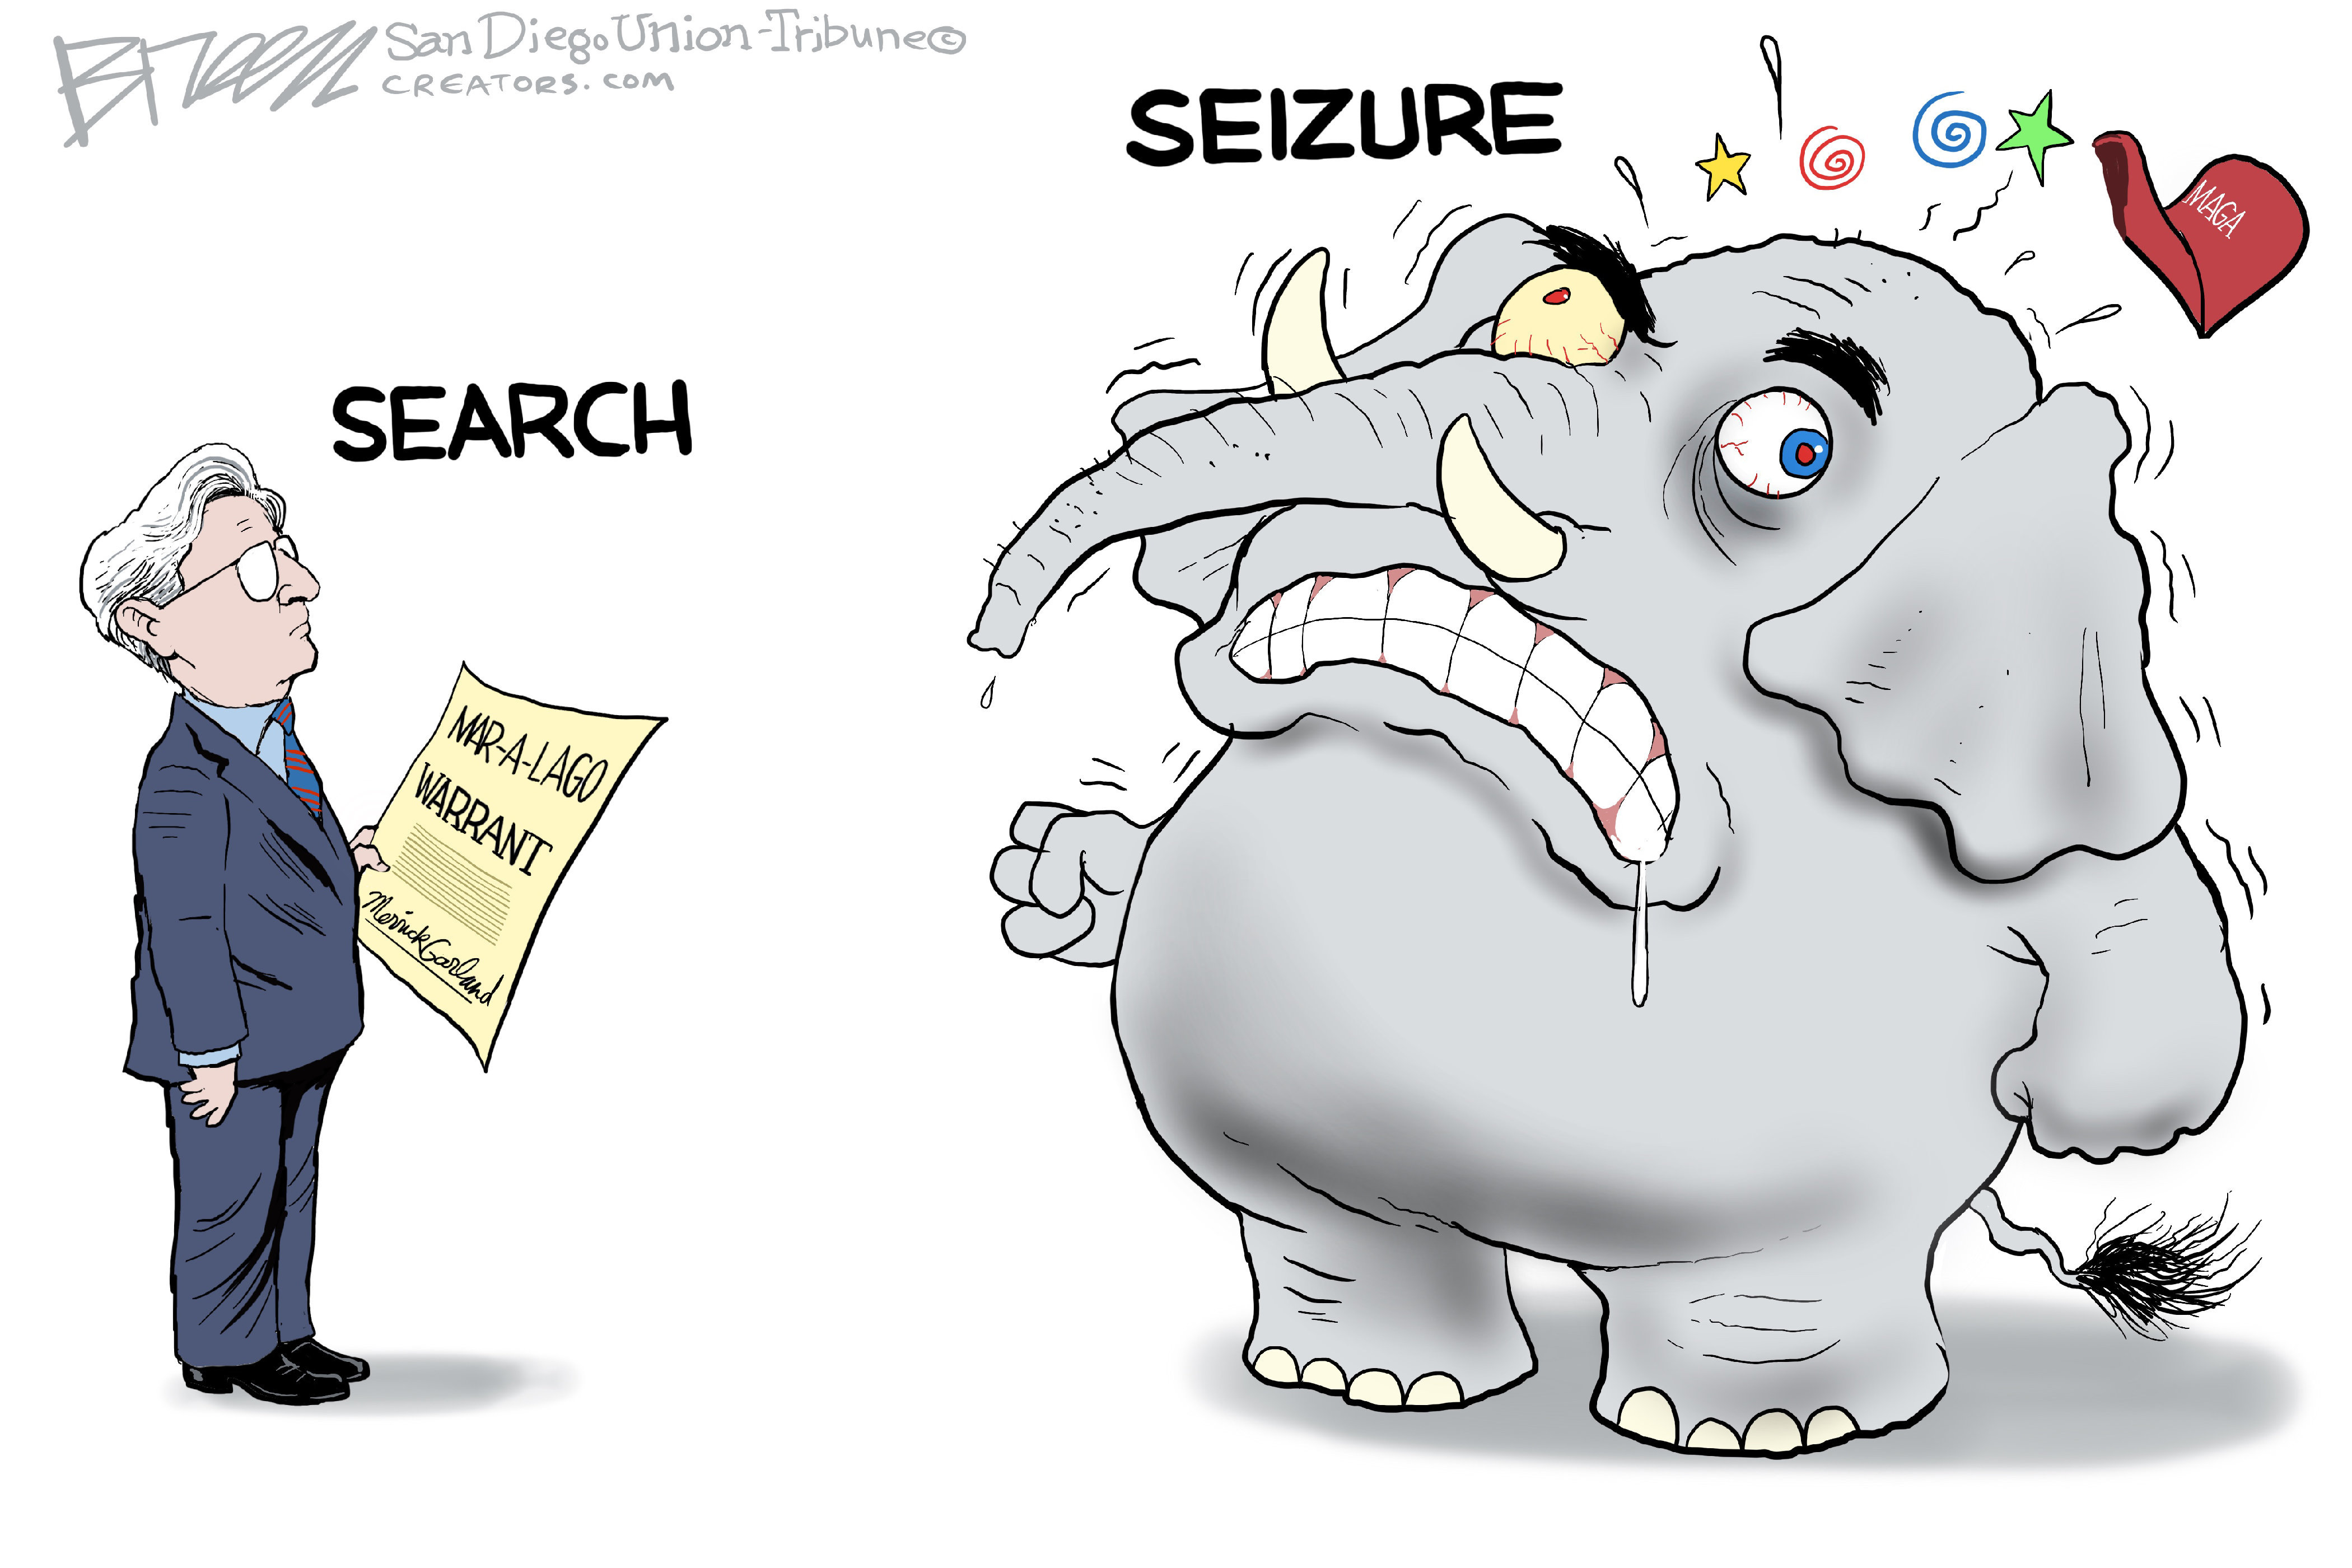 Search and seizure - Political Cartoon